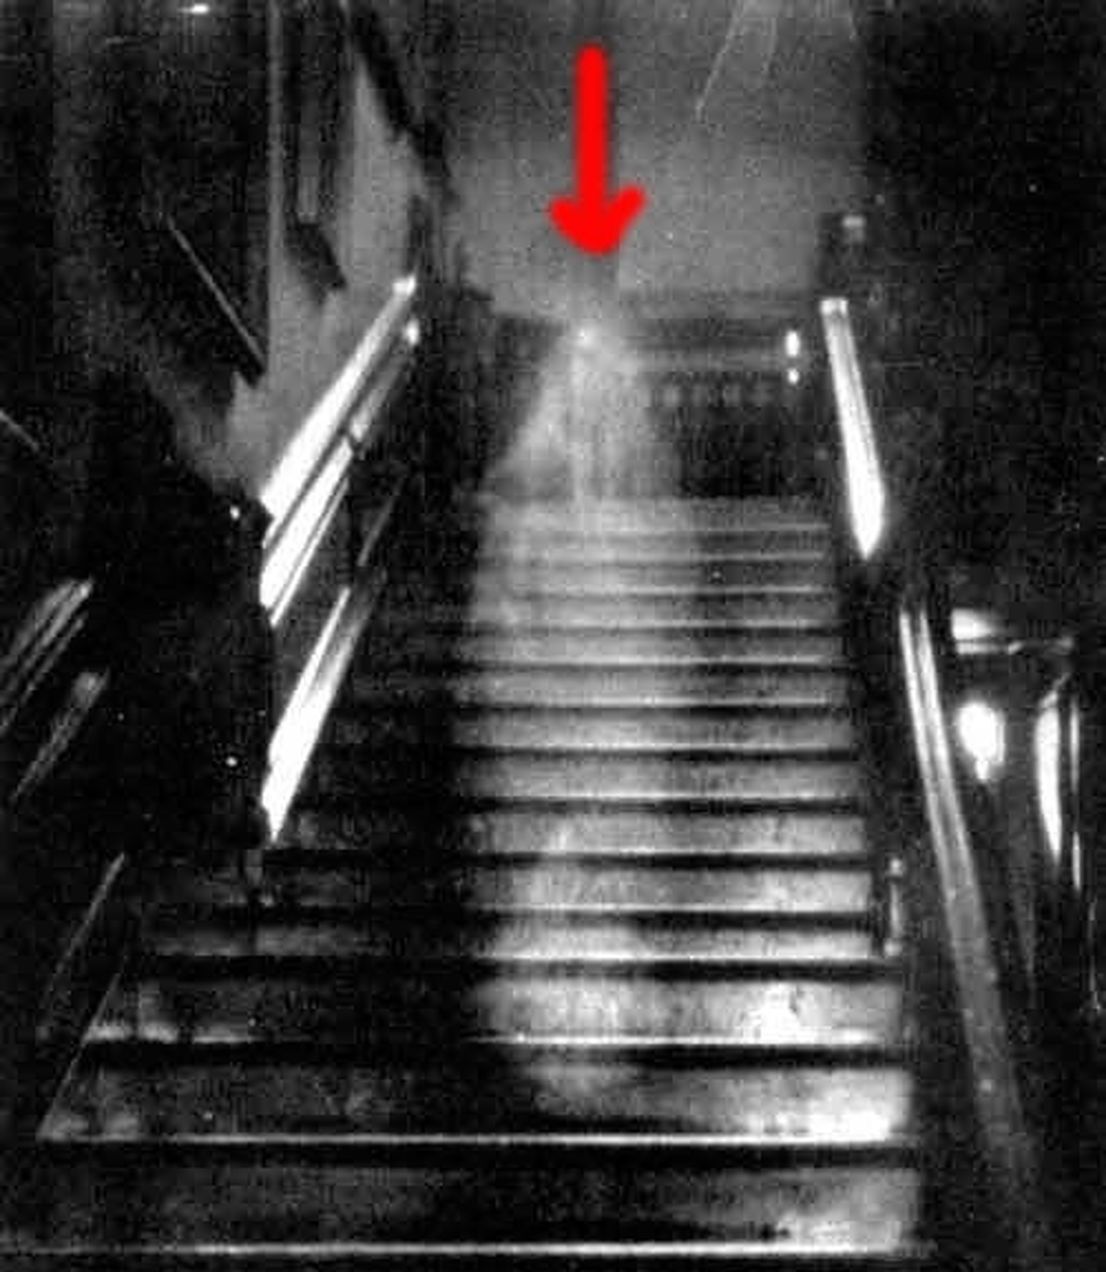 "Призрак Леди Браун" – самый известный из призраков